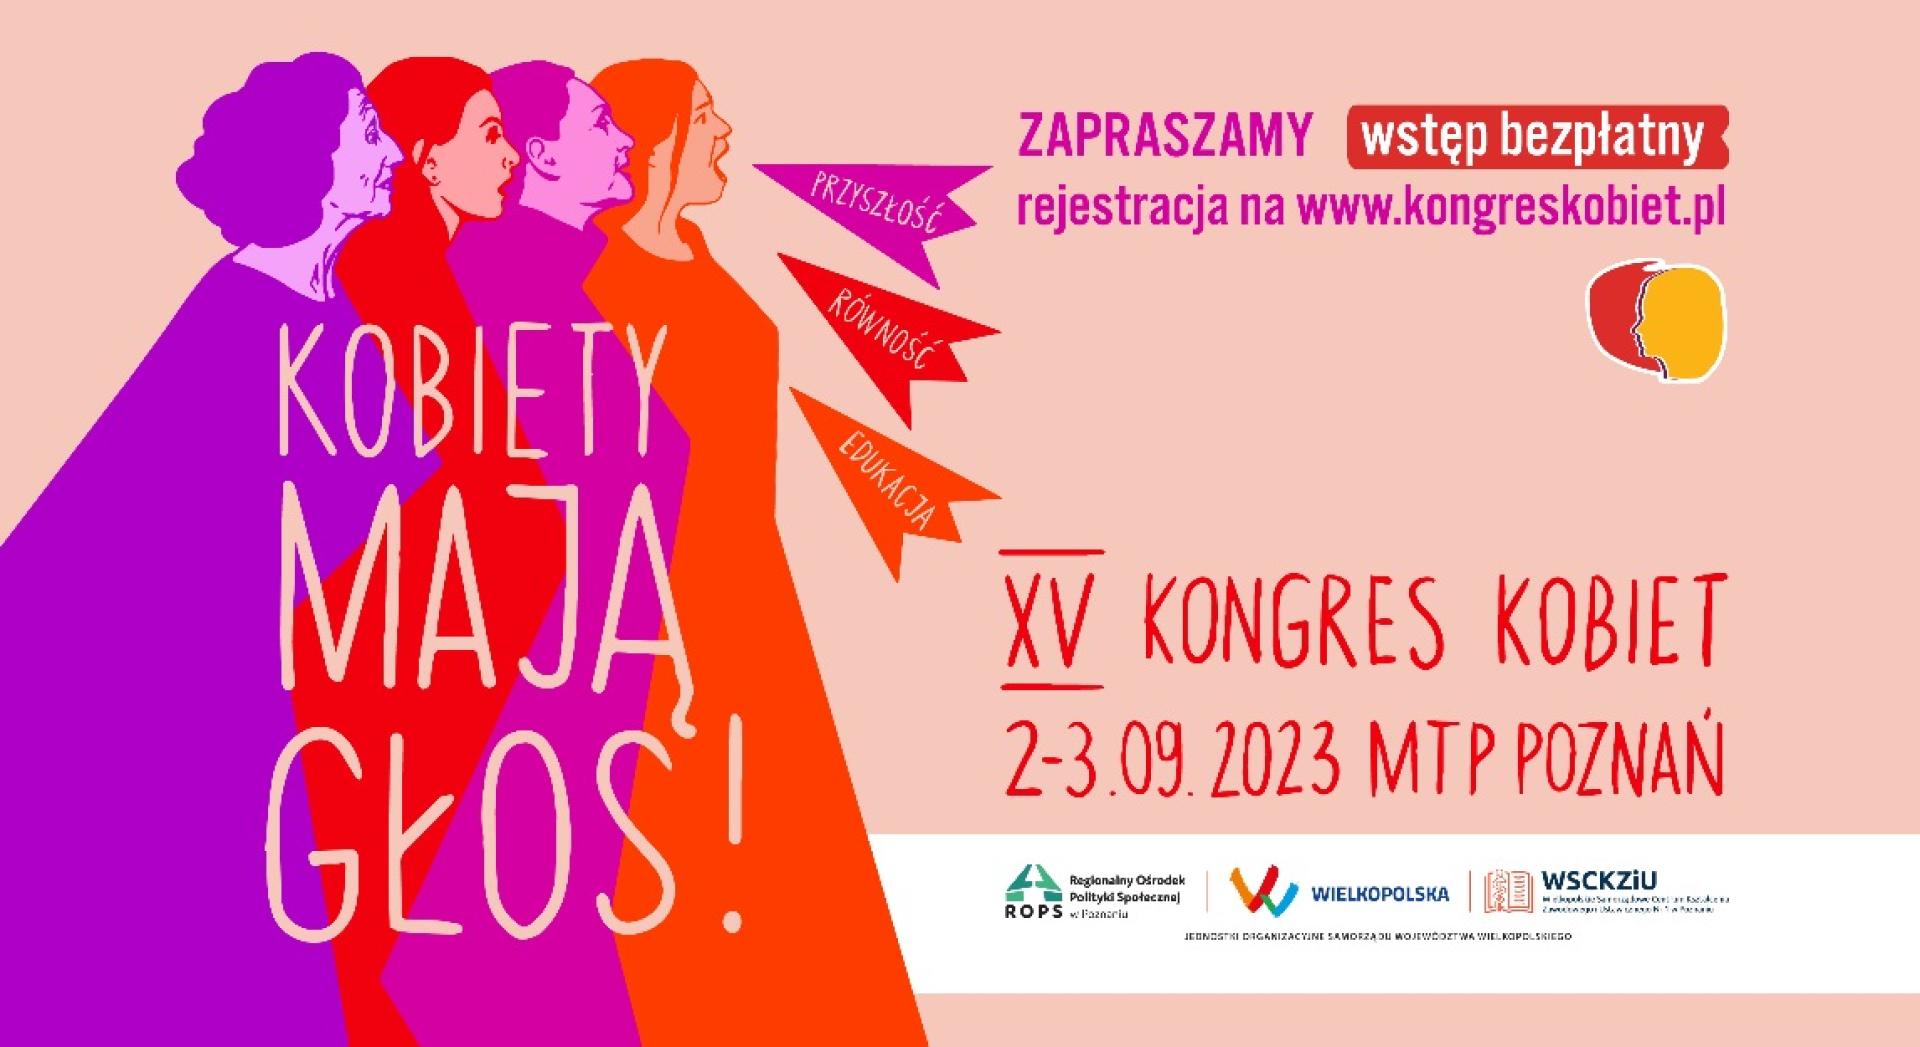 XV Kongres Kobiet - Kobiety mają głos! - zobacz więcej